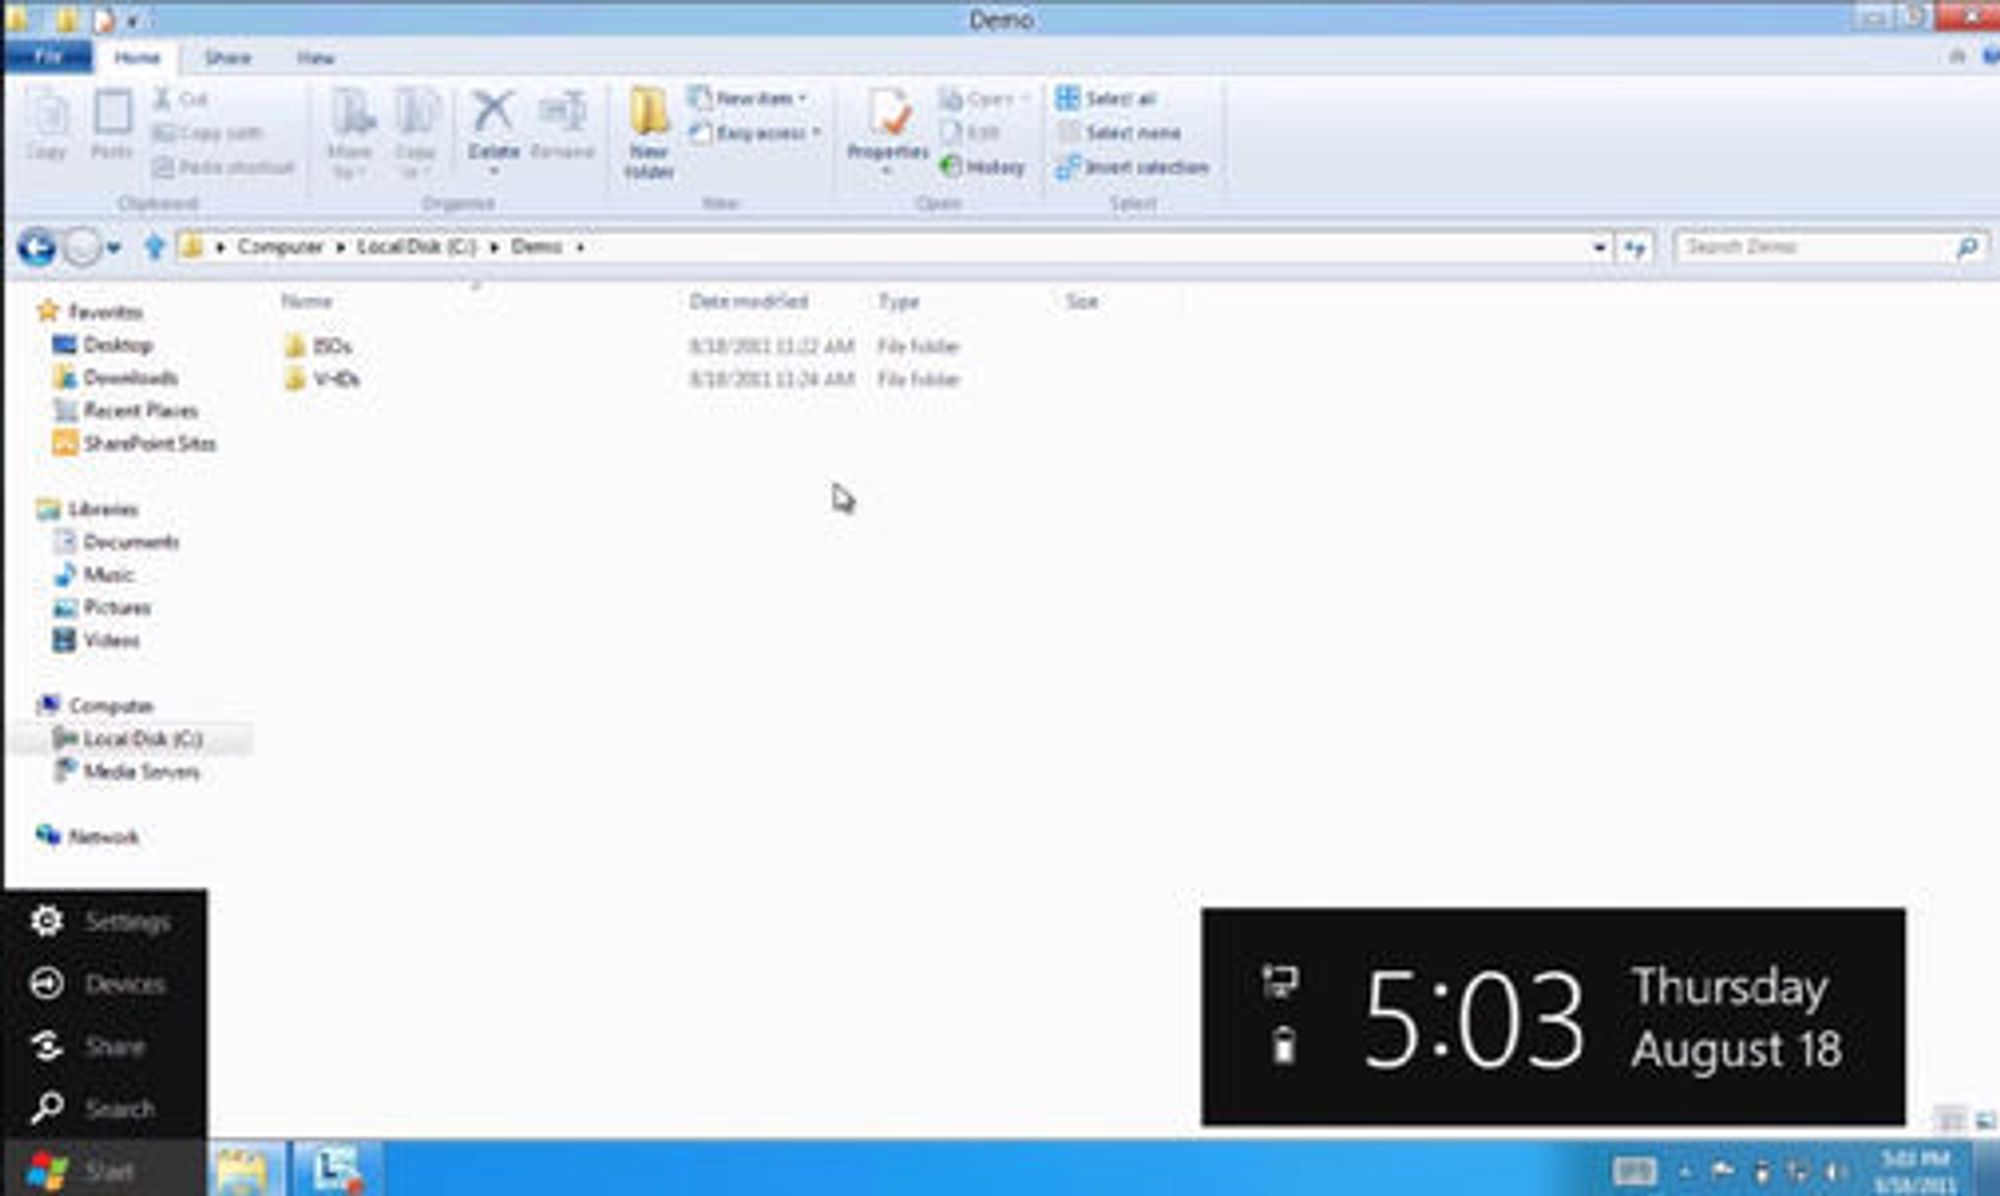 Et førsteinntrykk av hvordan Windows 8 ser ut på dagens stadium. Primært vises oppgavelinjen, Windows Explorer og en del av startmenyen.